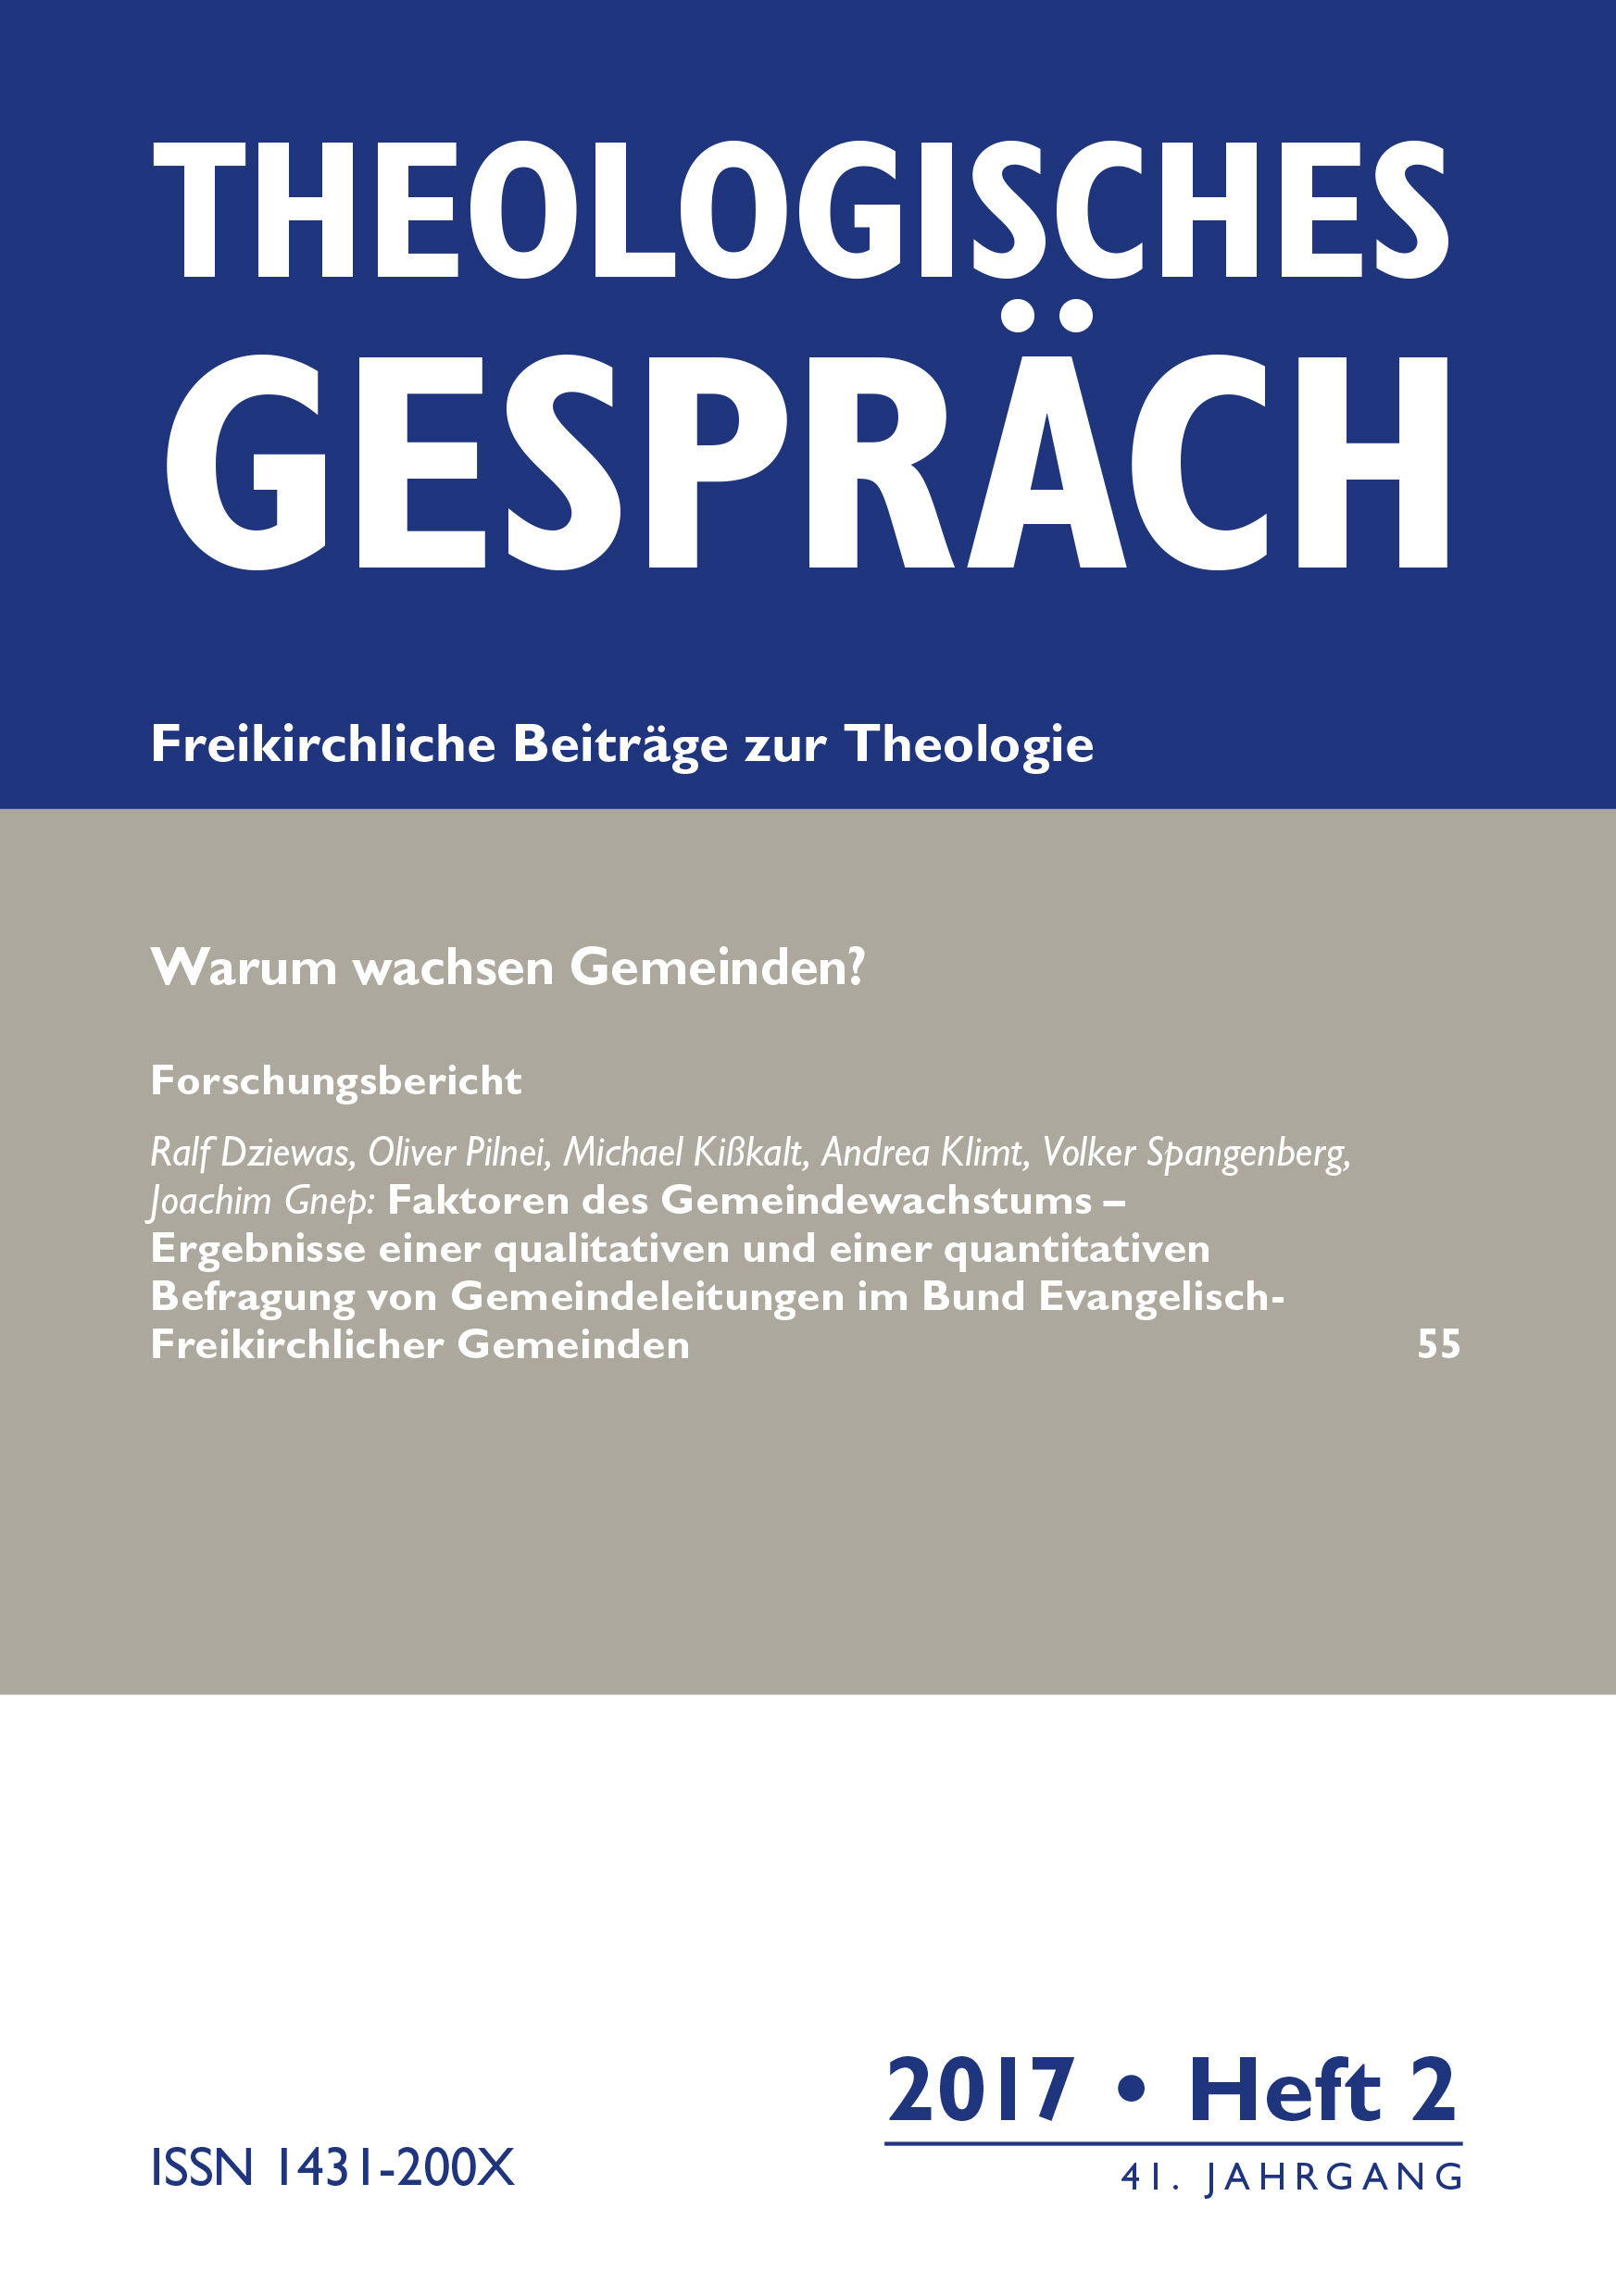 Theologisches Gespräch 02/2017